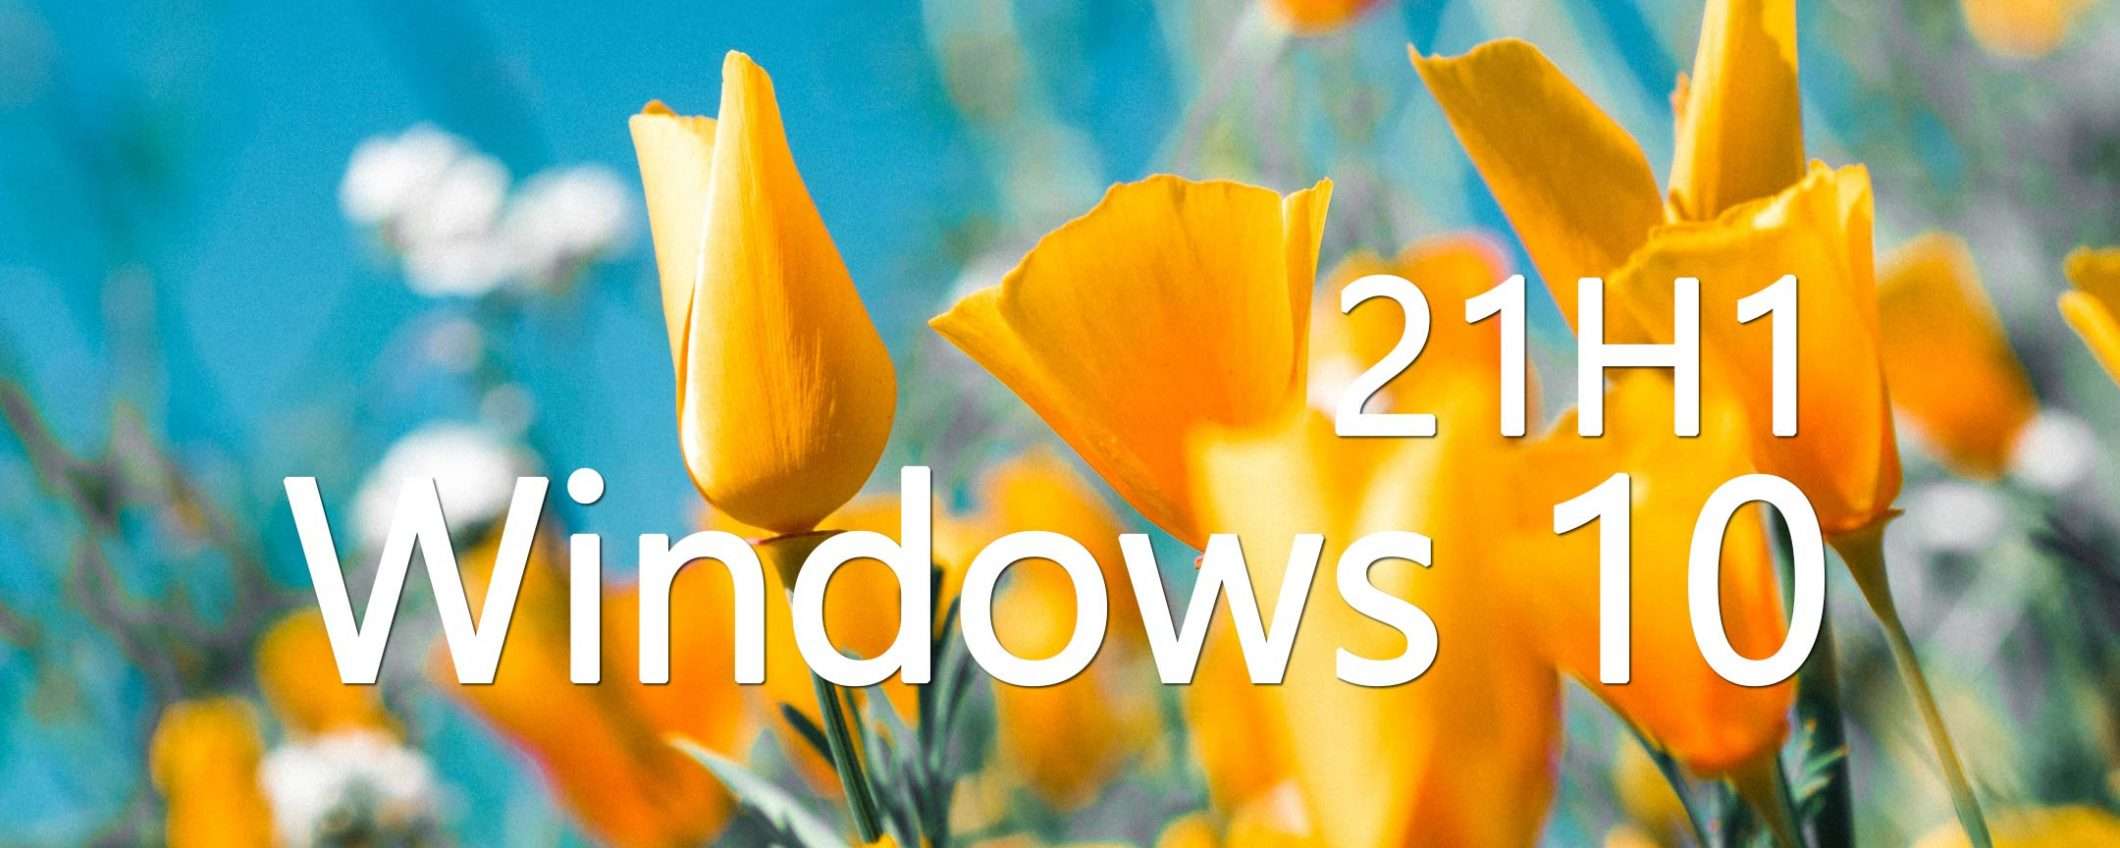 Windows 10 21H1 non sarà un major update